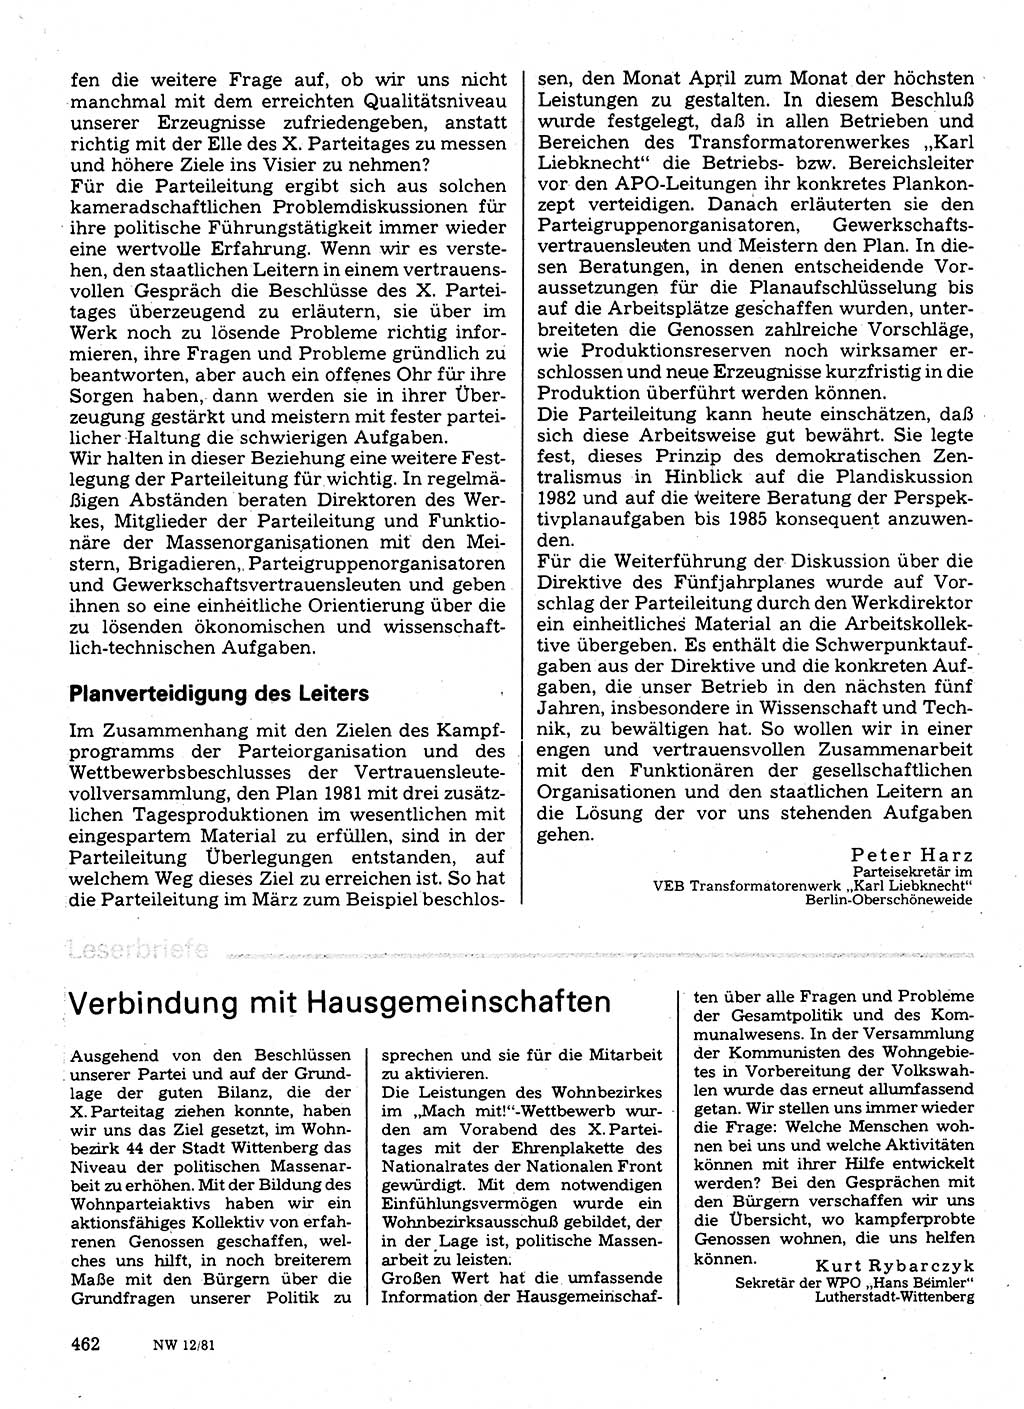 Neuer Weg (NW), Organ des Zentralkomitees (ZK) der SED (Sozialistische Einheitspartei Deutschlands) für Fragen des Parteilebens, 36. Jahrgang [Deutsche Demokratische Republik (DDR)] 1981, Seite 462 (NW ZK SED DDR 1981, S. 462)